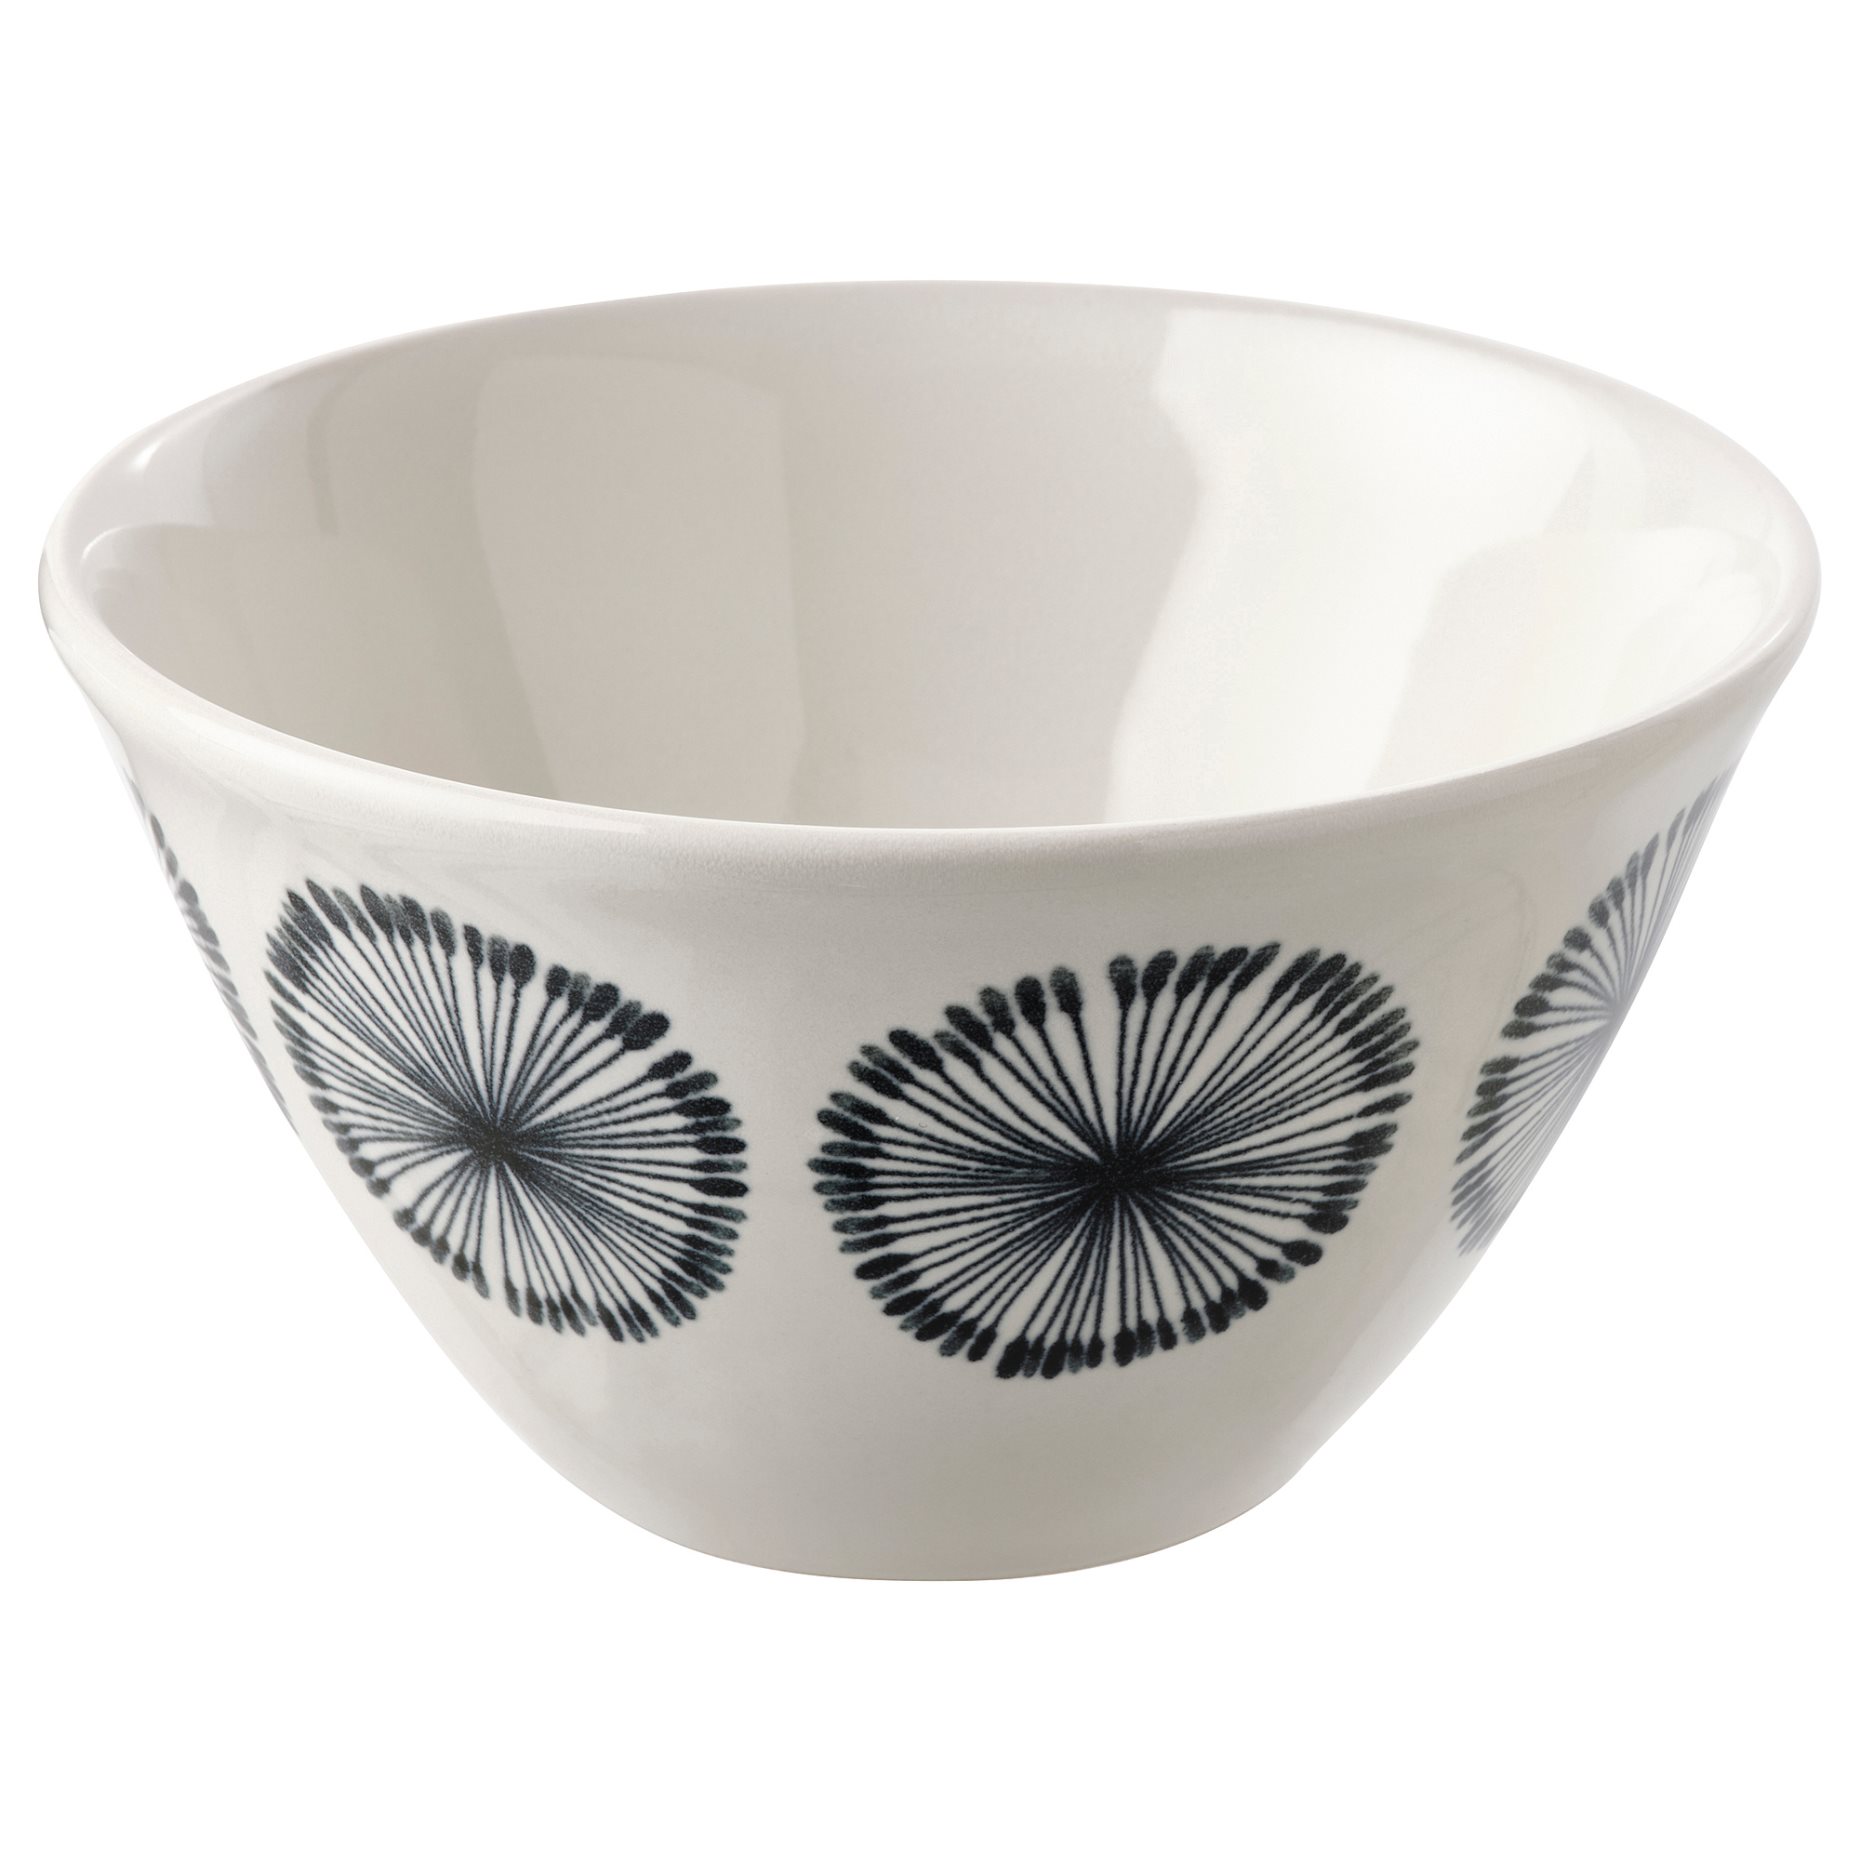 FRIKOSTIG, bowl/patterned, 11 cm, 204.694.02